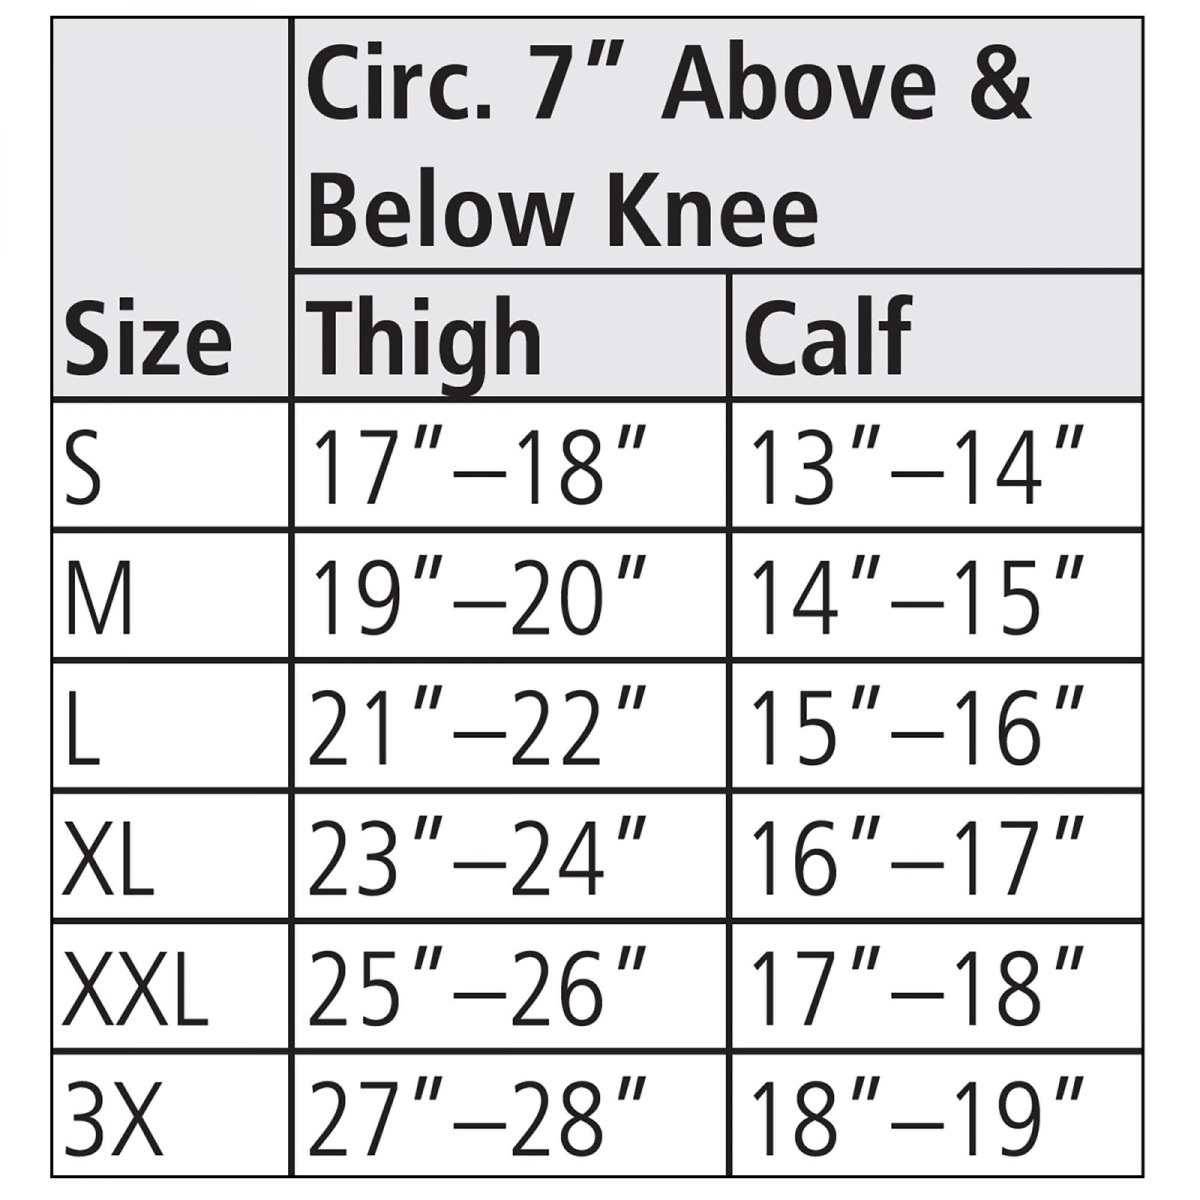 Mueller Knee Brace Size Chart